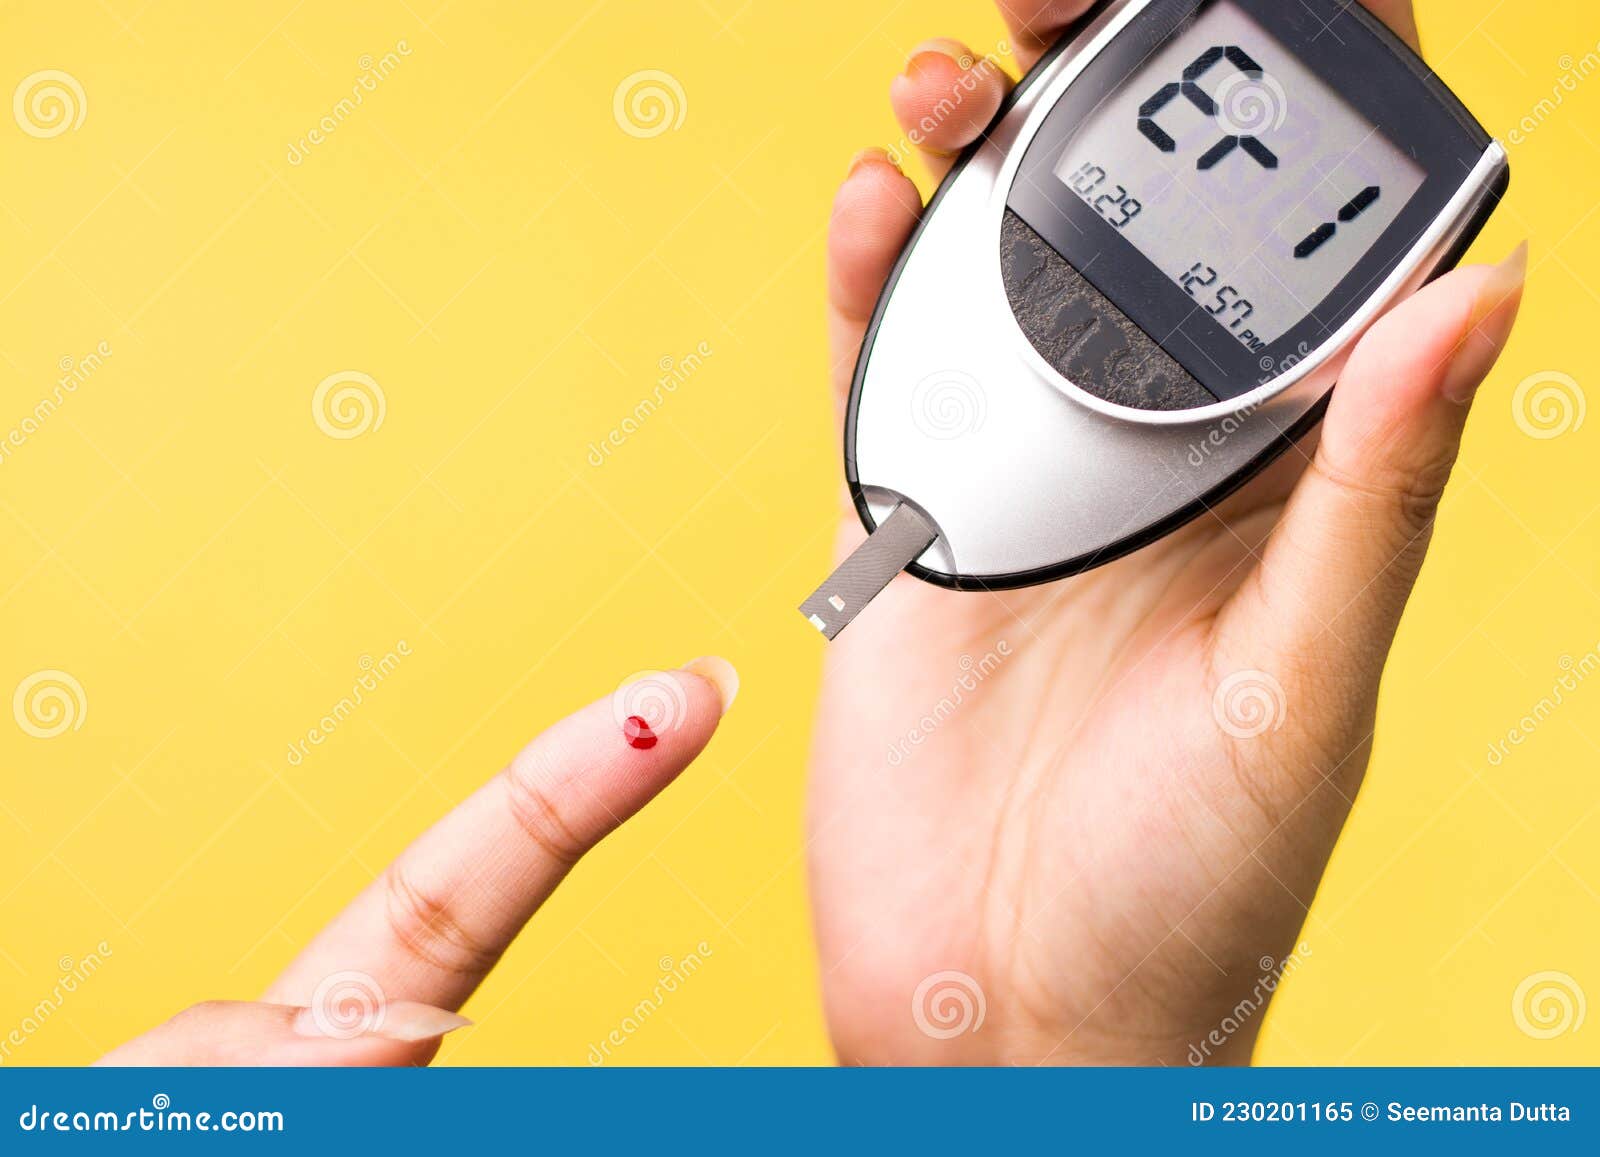 Medidor De Glucosa En La Sangre, El Valor De Azúcar En La Sangre